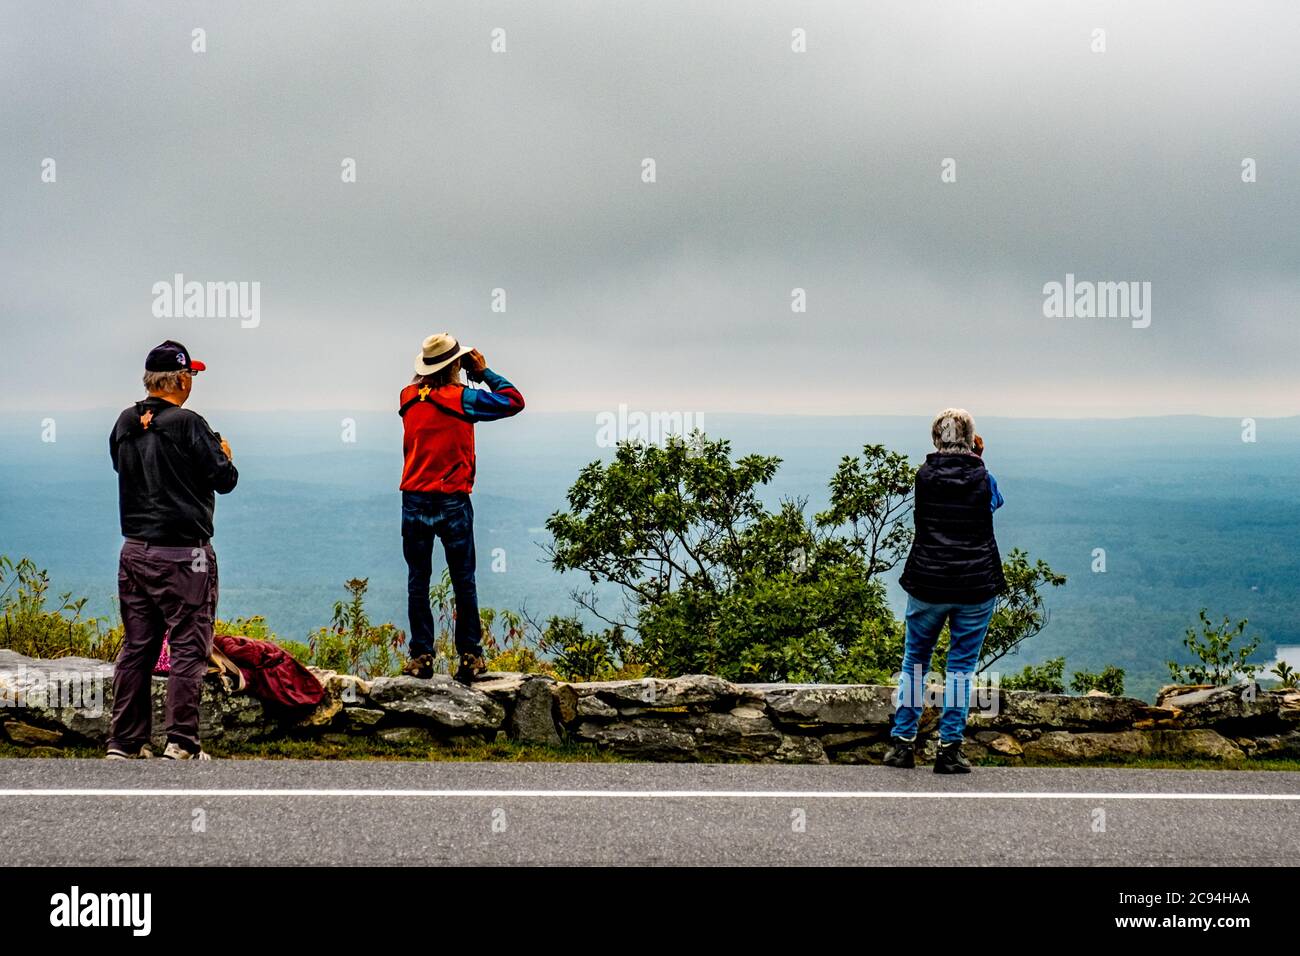 Ein sehr nebliger Tag auf dem Mount Wachusett in Princeton, Massachusetts Stockfoto